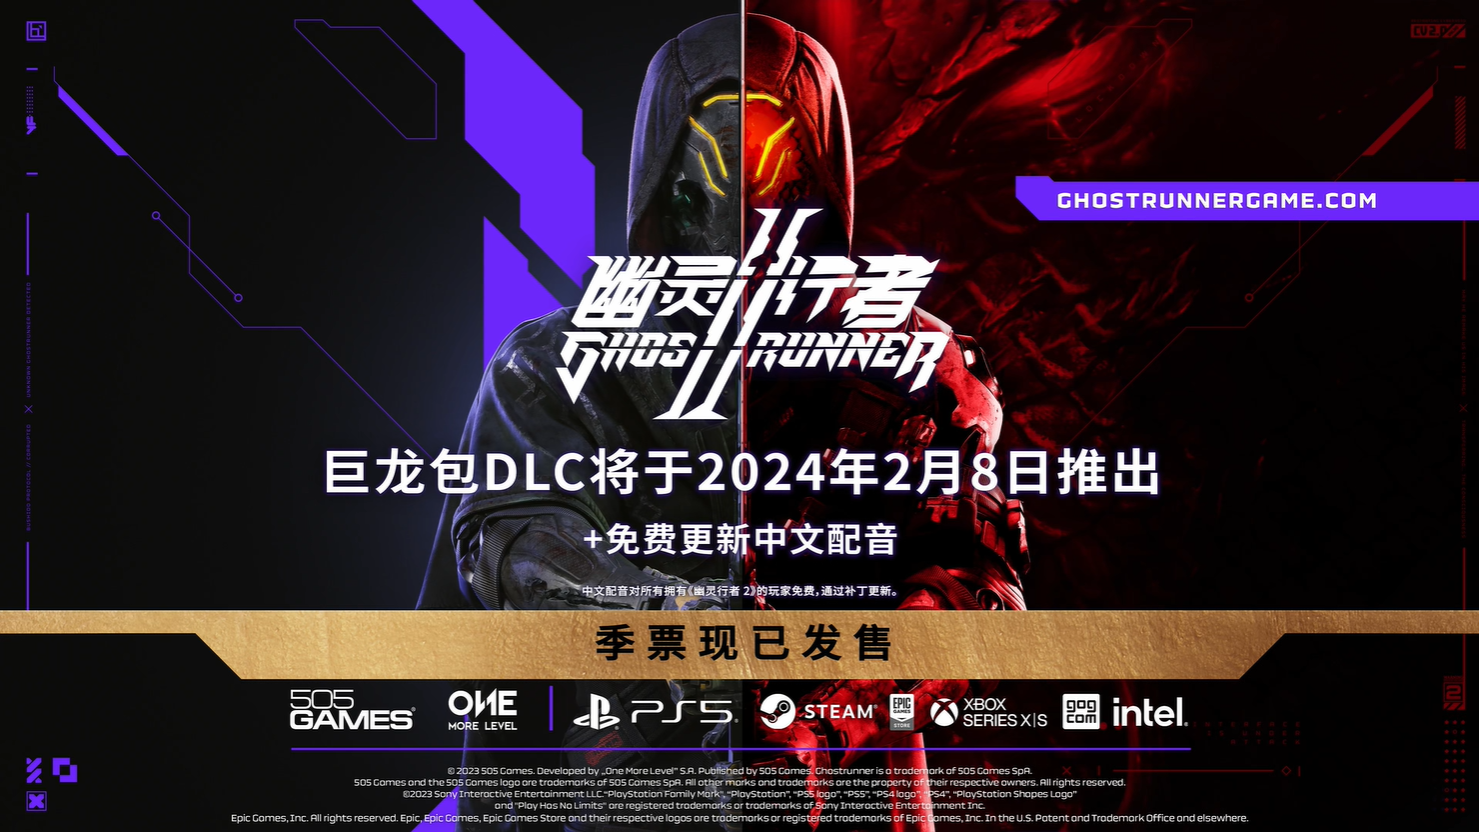 《幽靈行者2》免費更新中文配音 巨龍外觀DLC 2月8日同步上線